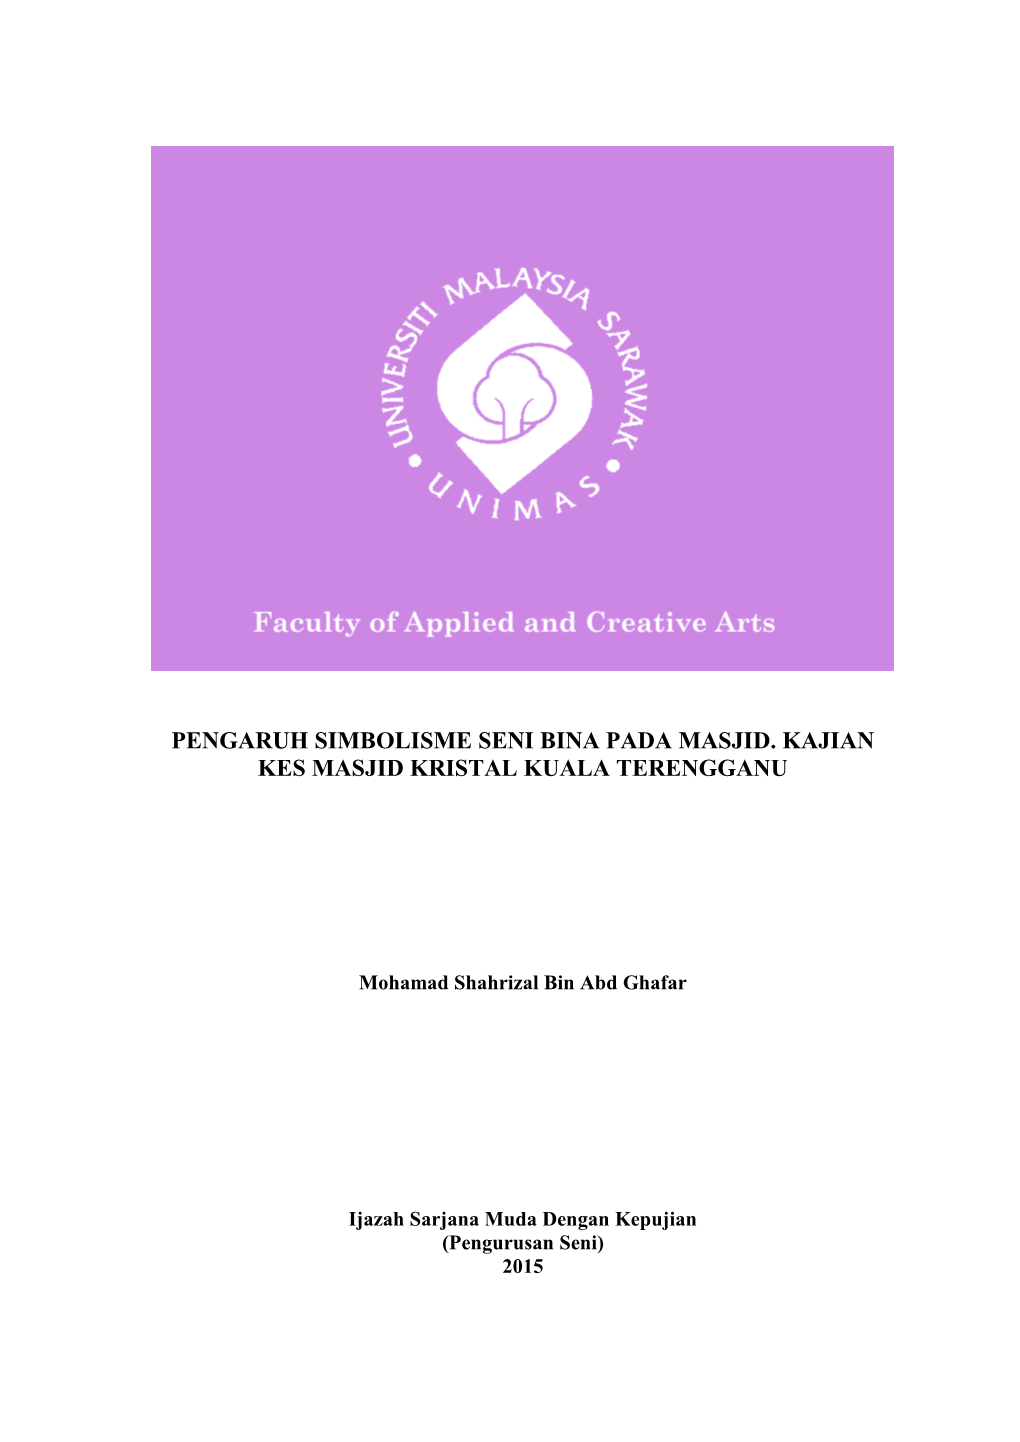 Pengaruh Simbolisme Seni Bina Pada Masjid. Kajian Kes Masjid Kristal Kuala Terengganu